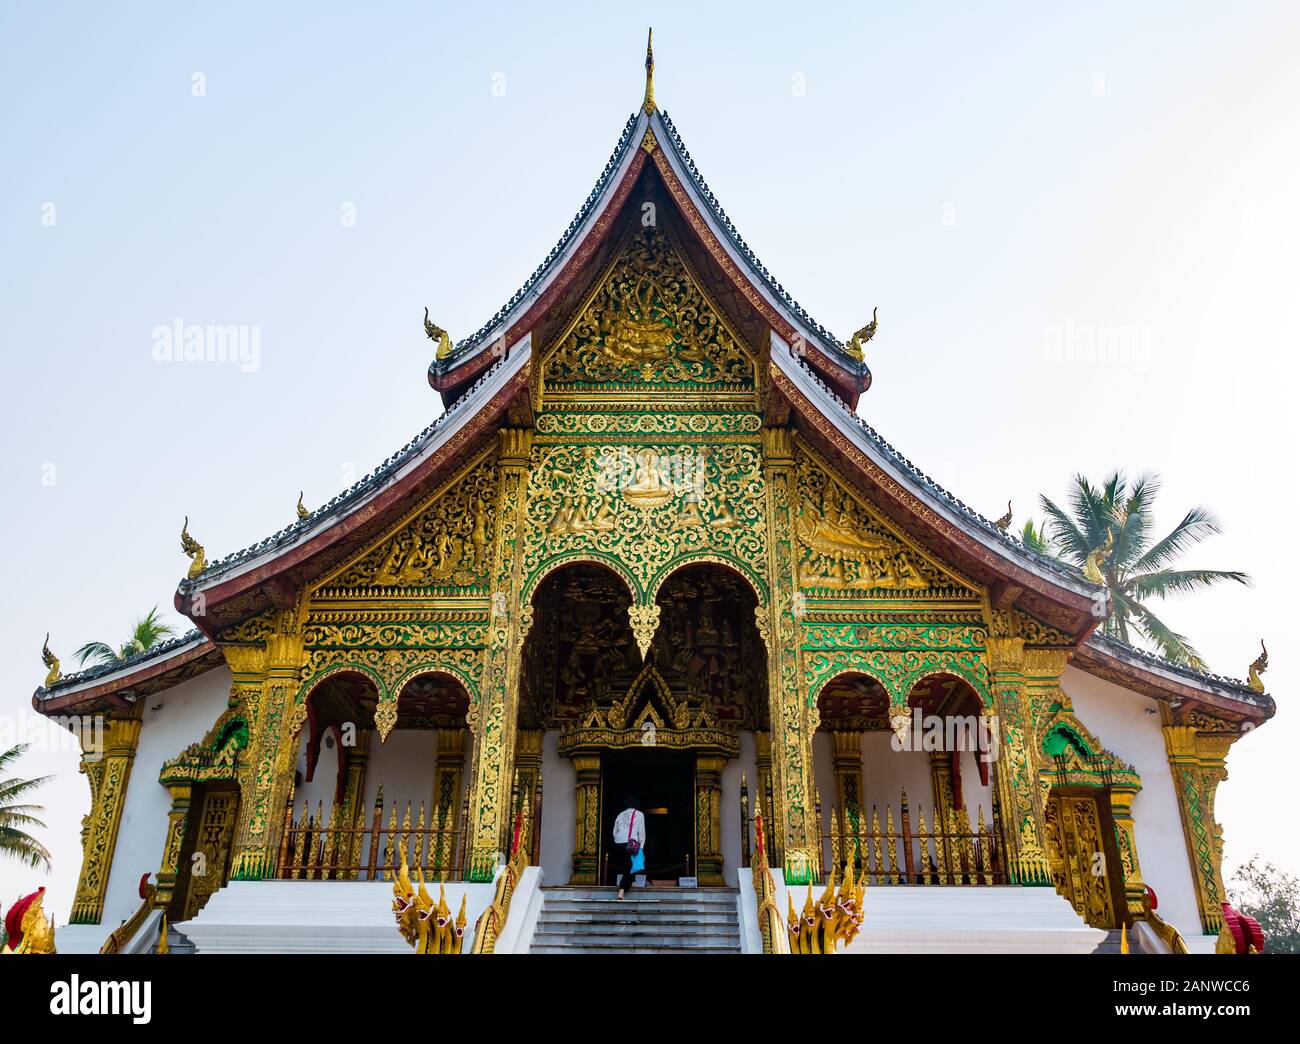 Haw Pha Bang temple, Royal Palace, Luang Prabang, Laos, Southeast Asia Stock Photo